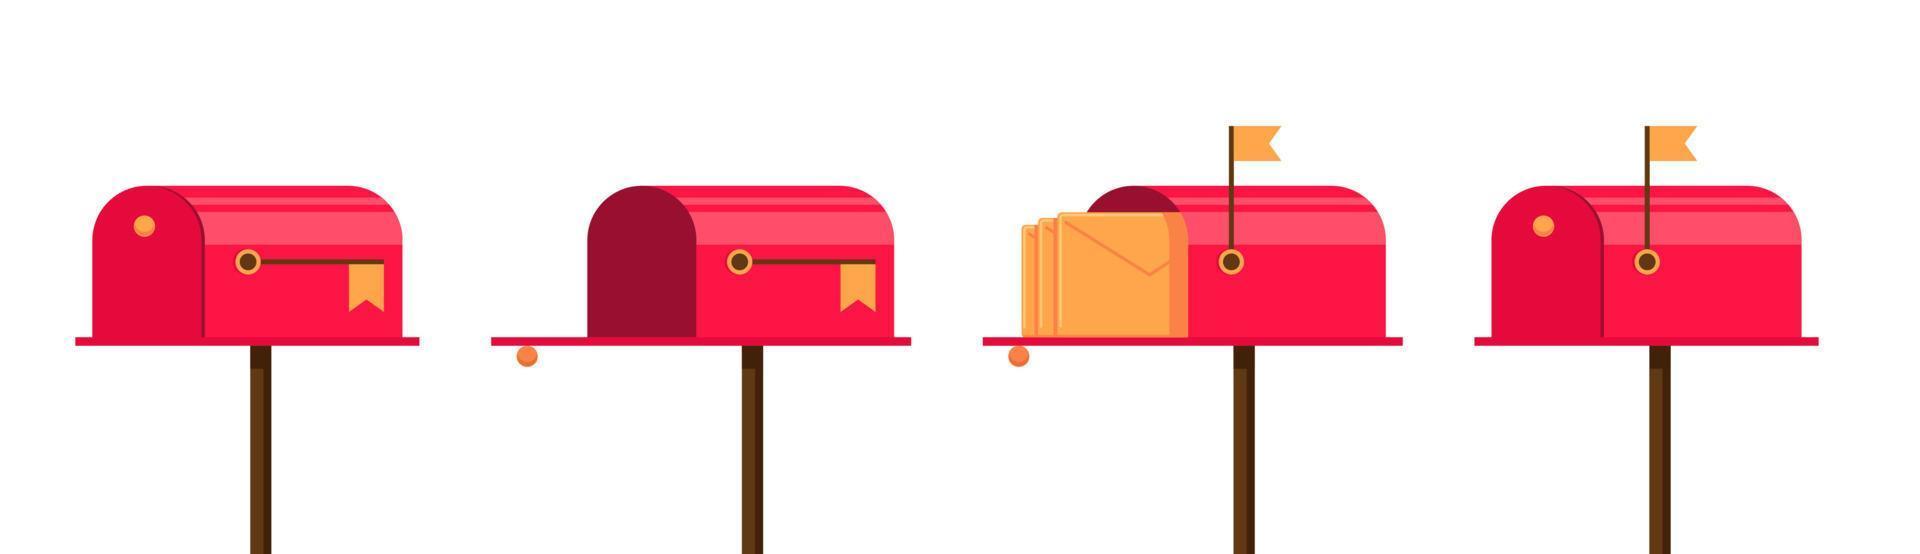 rode brievenbus set. gesloten en open, verhoogde vlag en brief binnen. lege brievenbus en met envelop. brievenbussen illustratie. vector eps brievenbussen